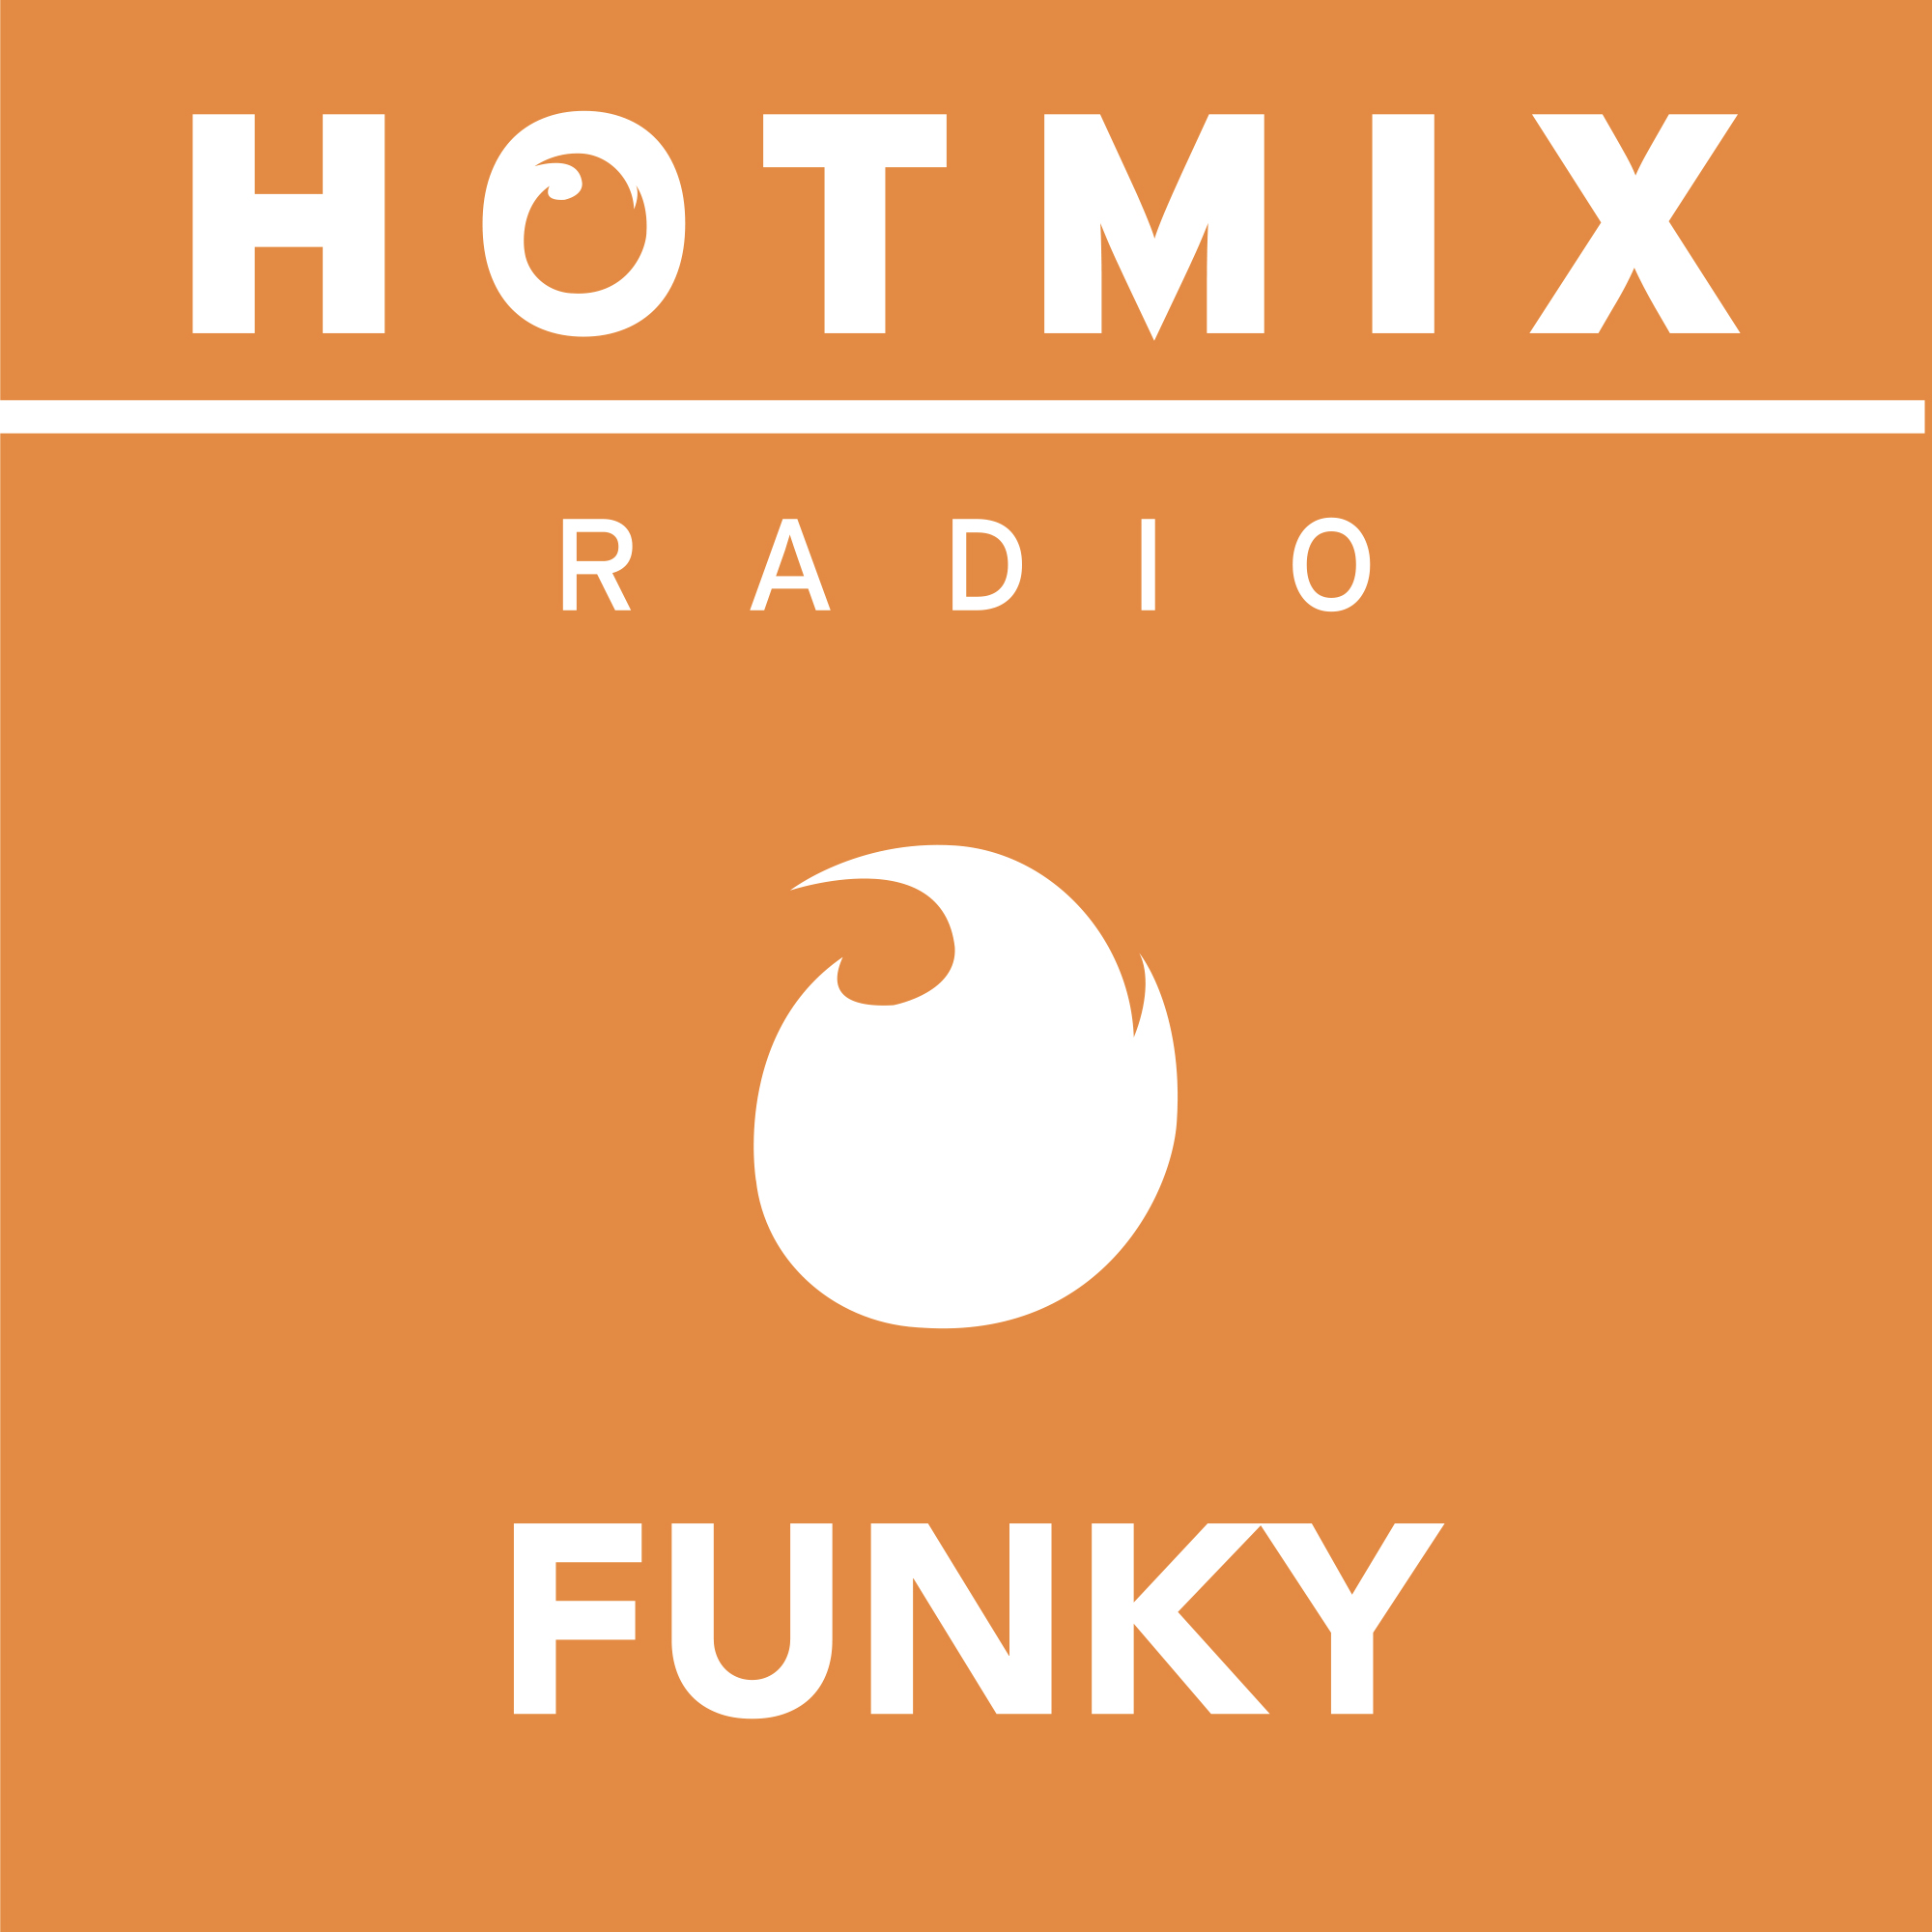 Hotmixradio Funky